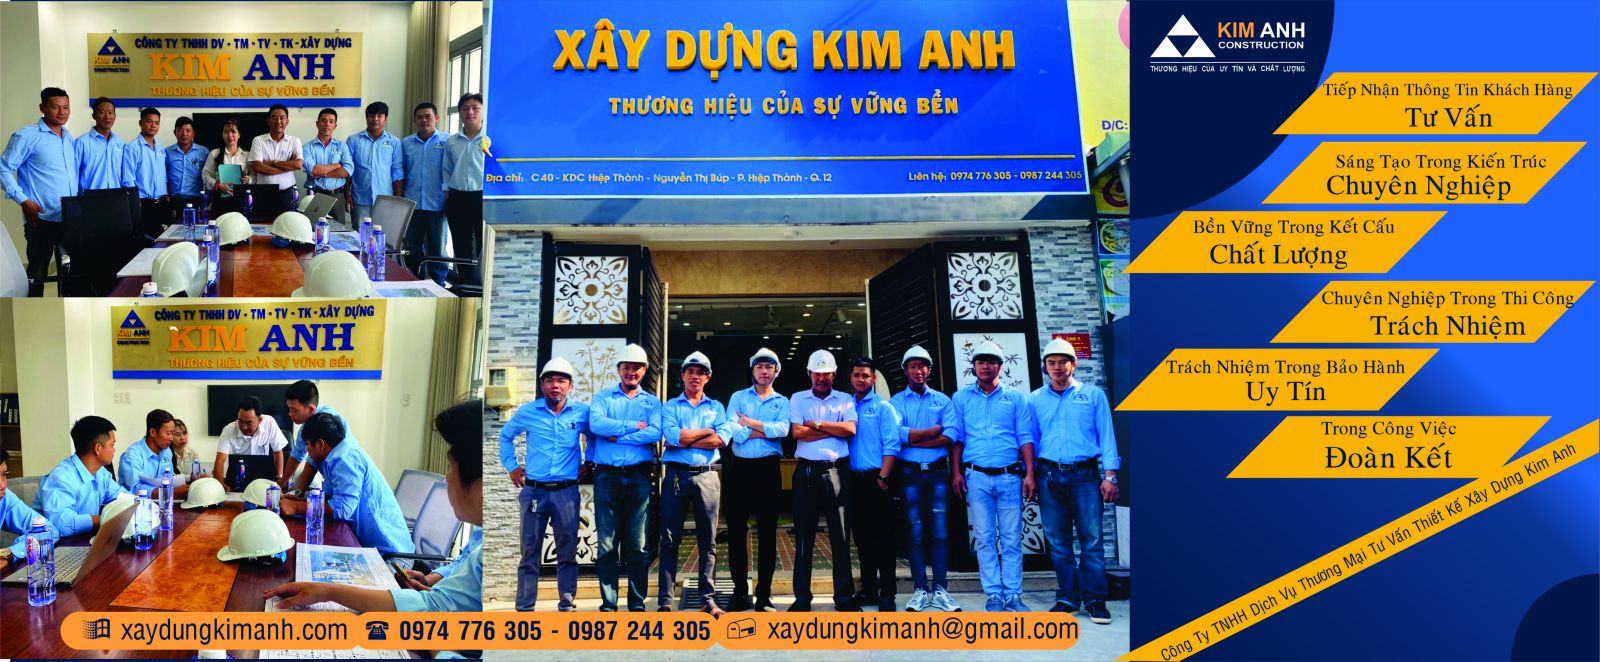  Xây Nhà tại Quận Gò Vấp-TP.HCM-Công ty Xây Dựng Kim Anh-xaydungkimanh.com